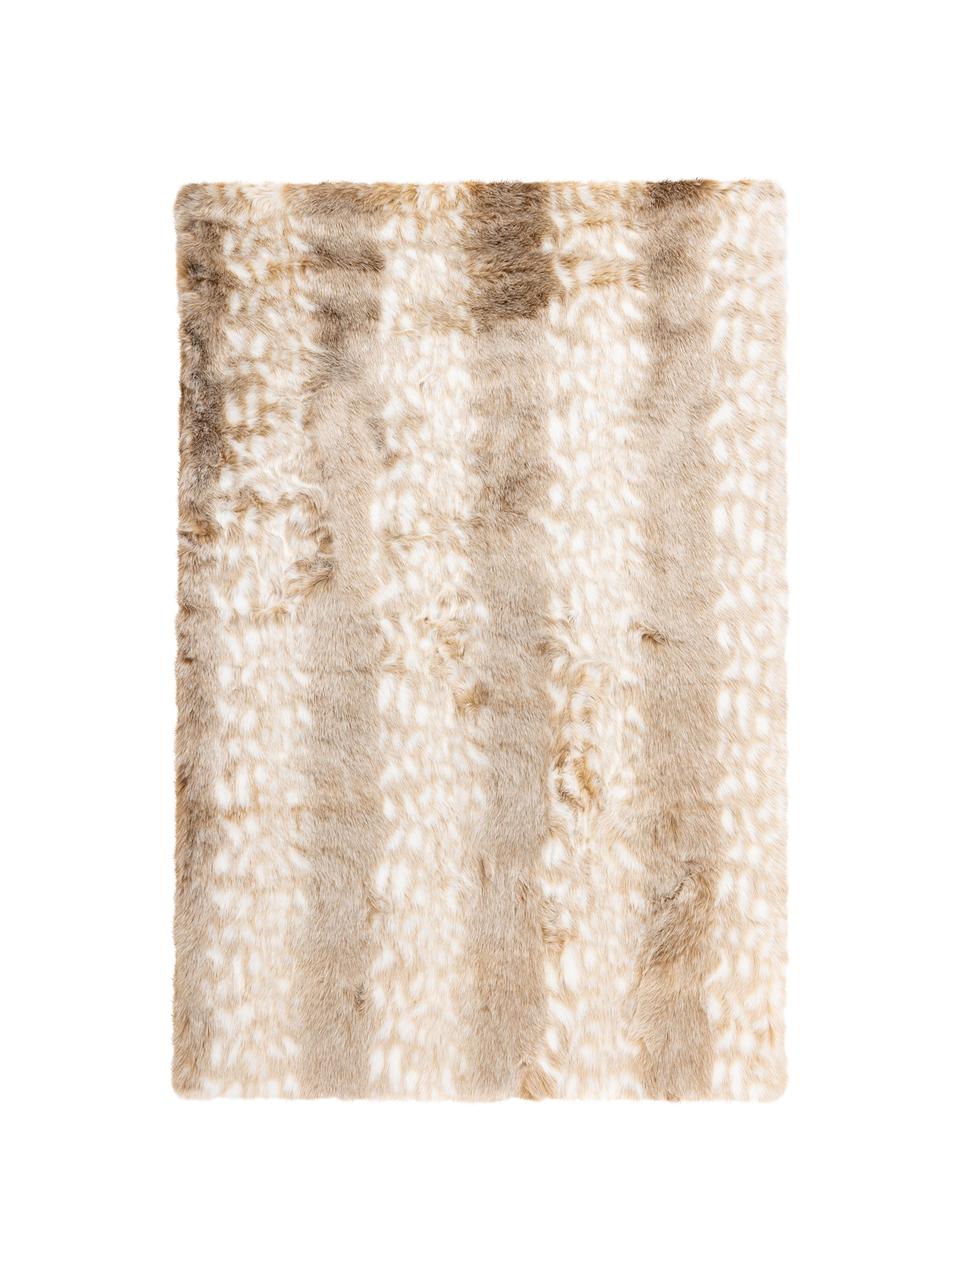 Načechraný koberec s vysokým vlasem Rumba, Béžová, krémově bílá